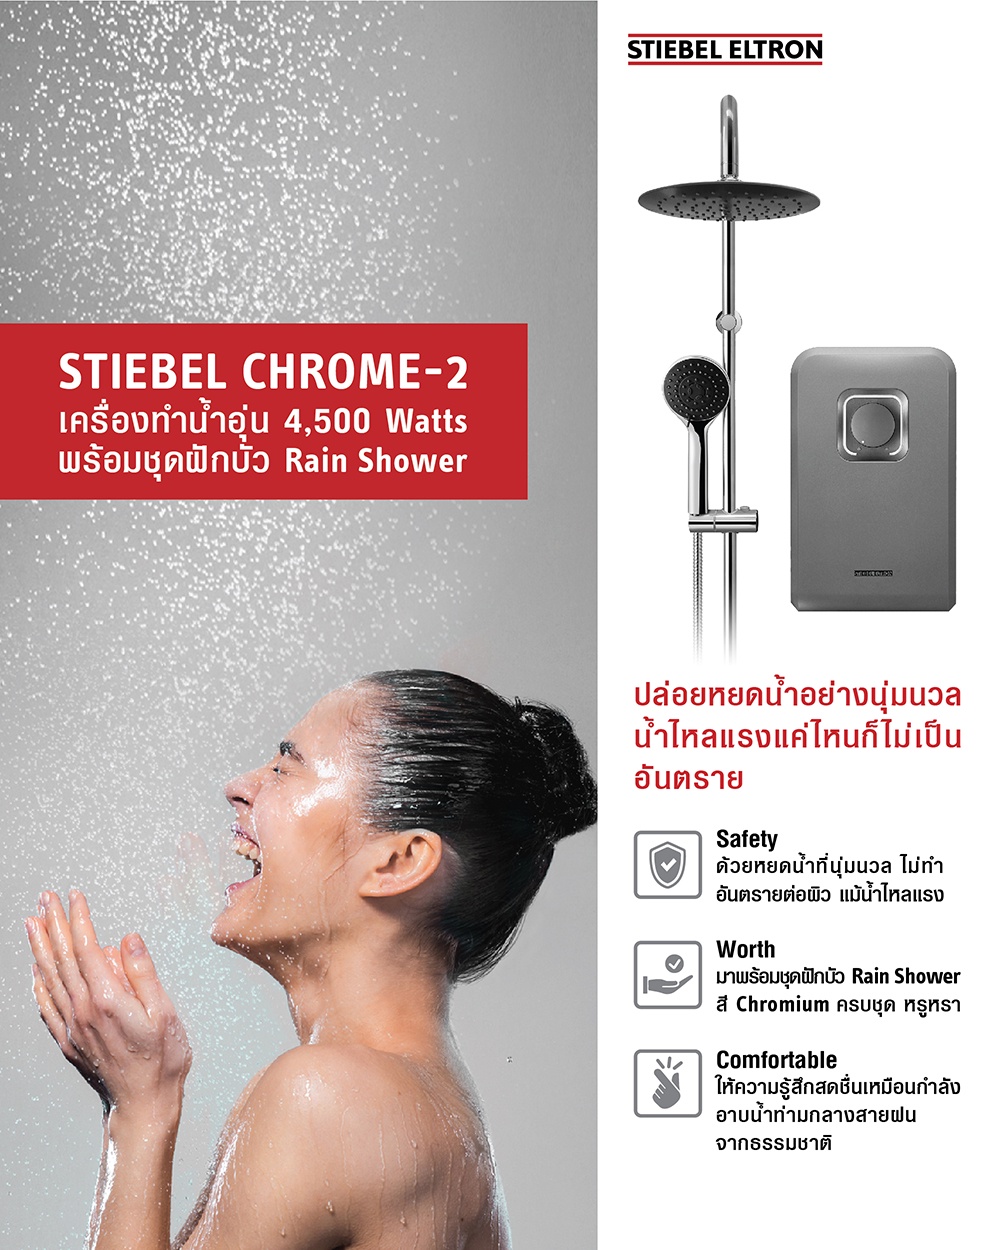 ภาพที่ให้รายละเอียดเกี่ยวกับ Stiebel Eltron เครื่องทำน้ำอุ่น รุ่น STIEBEL CHROME-2